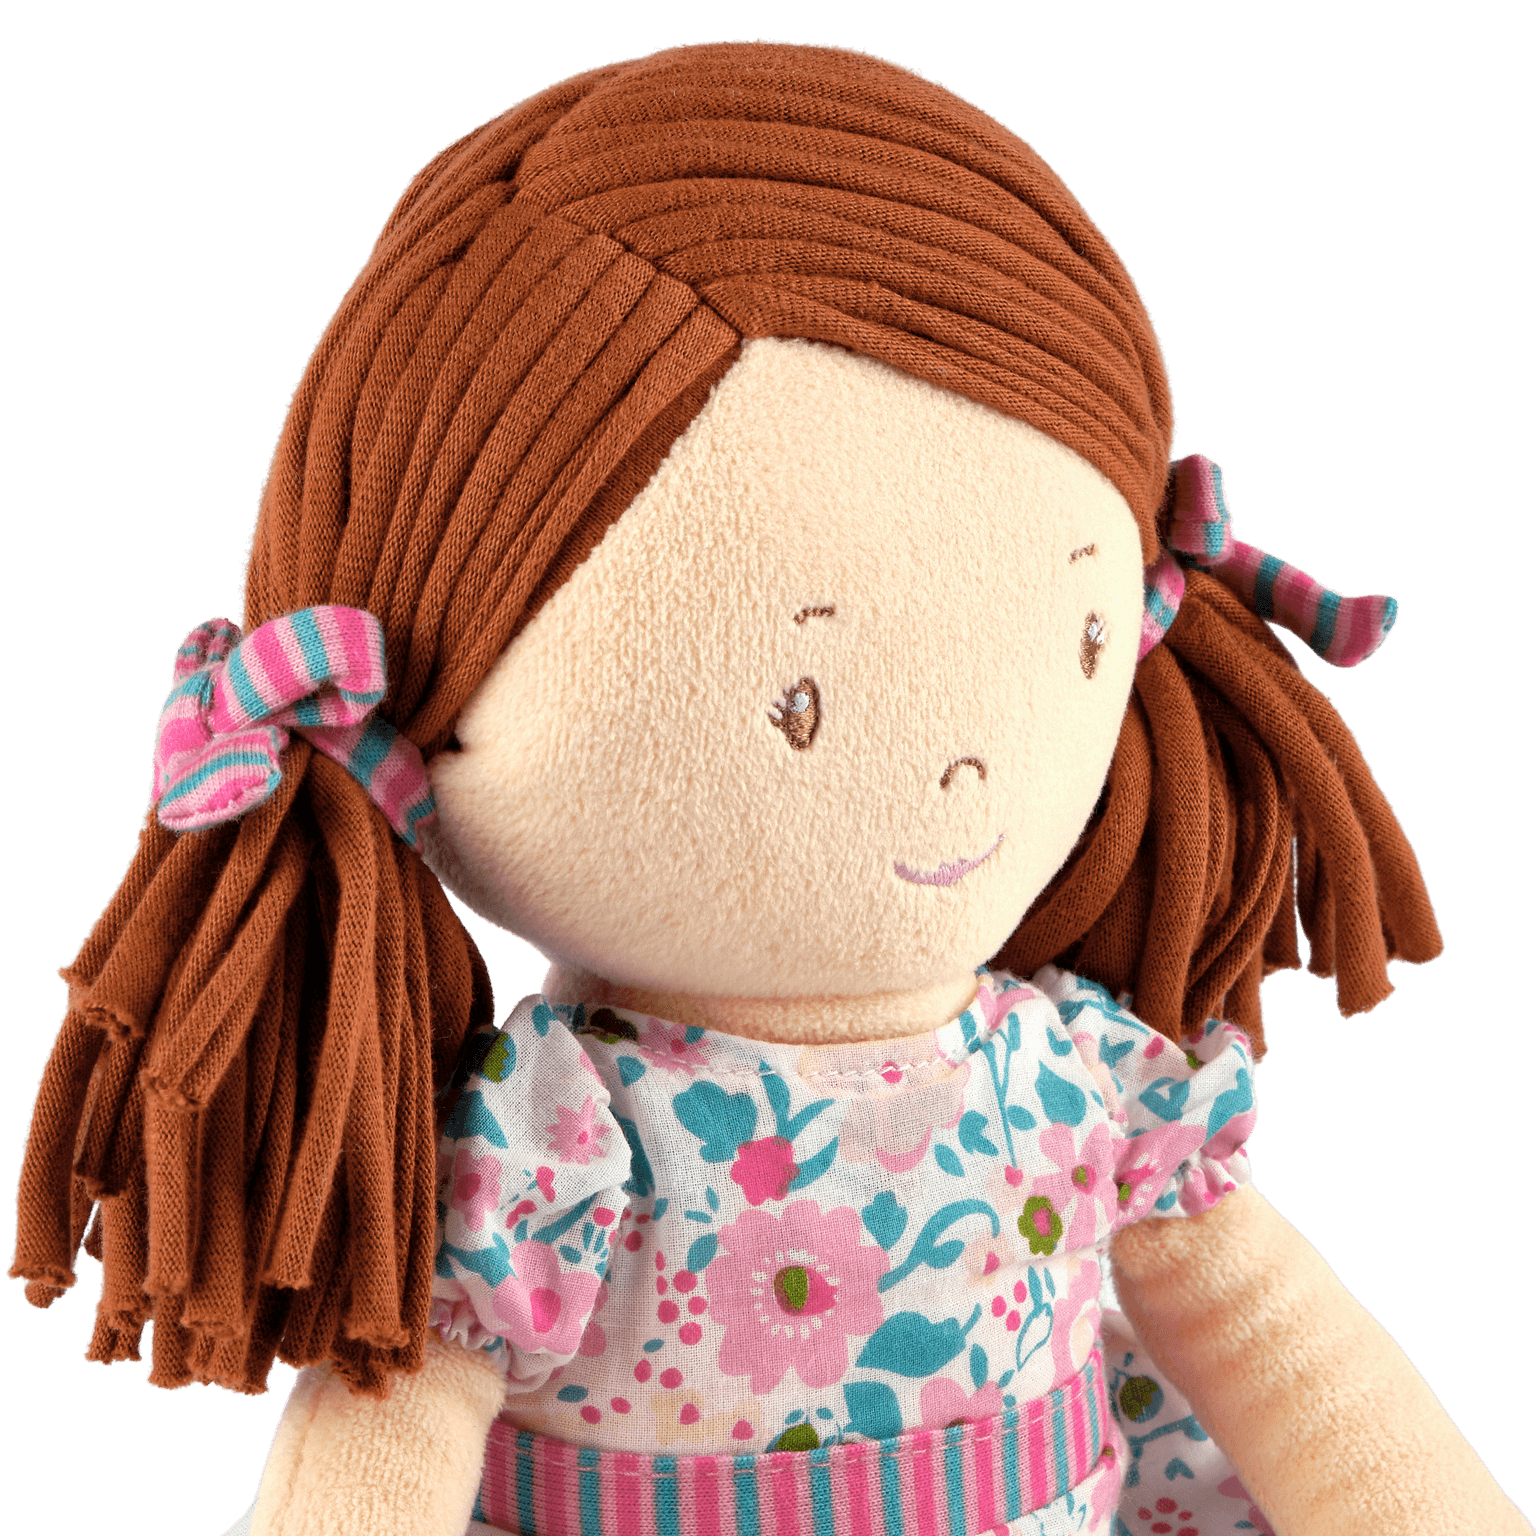 Katy - Dark Brown Hair with Pink and Seagreen Dress, Tikiri Toys, eco-friendly Toys, Mountain Kids Toys